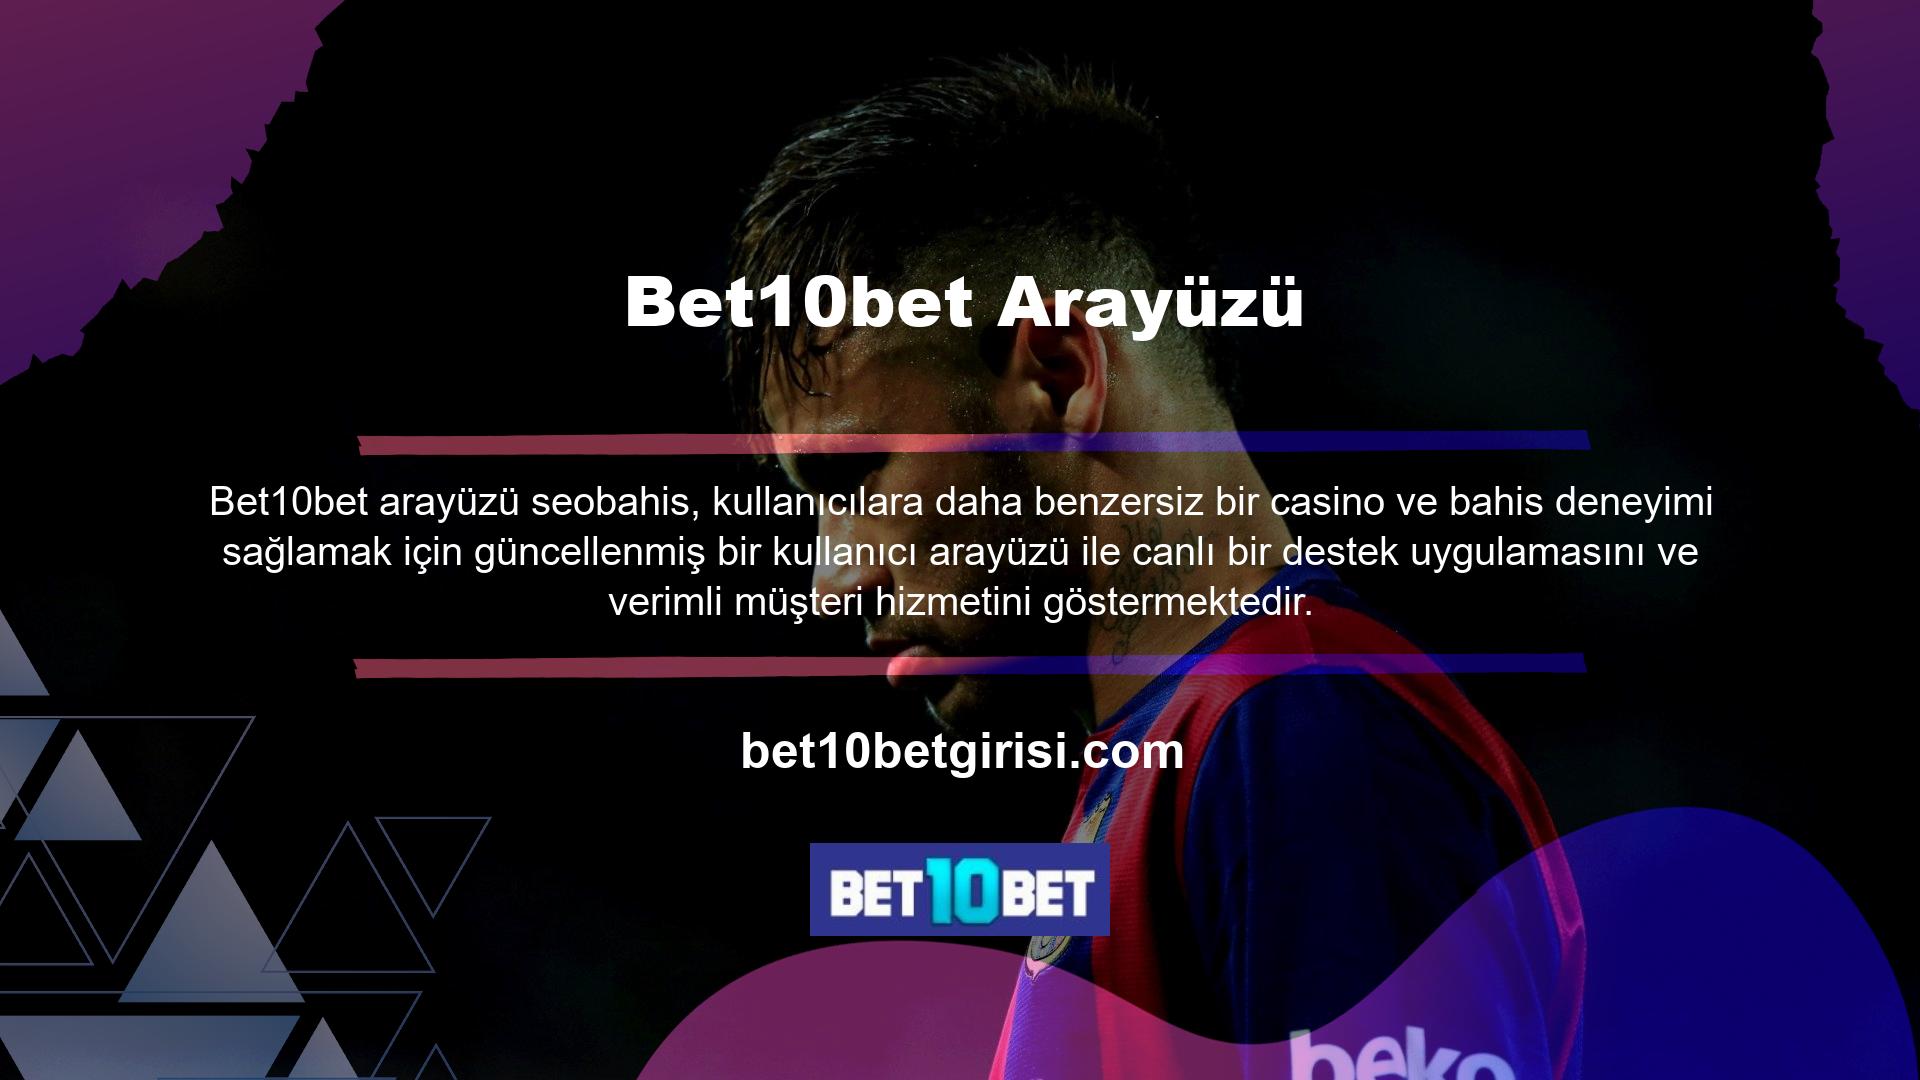 Bet10bet Bahis, kullanıcı dostu uygulaması, sunduğu geniş bahis seçenekleri ve geniş casino oyunları yelpazesinin yanı sıra müşteri ilişkilerindeki hizmet kalitesi ile büyük beğeni toplamaktadır